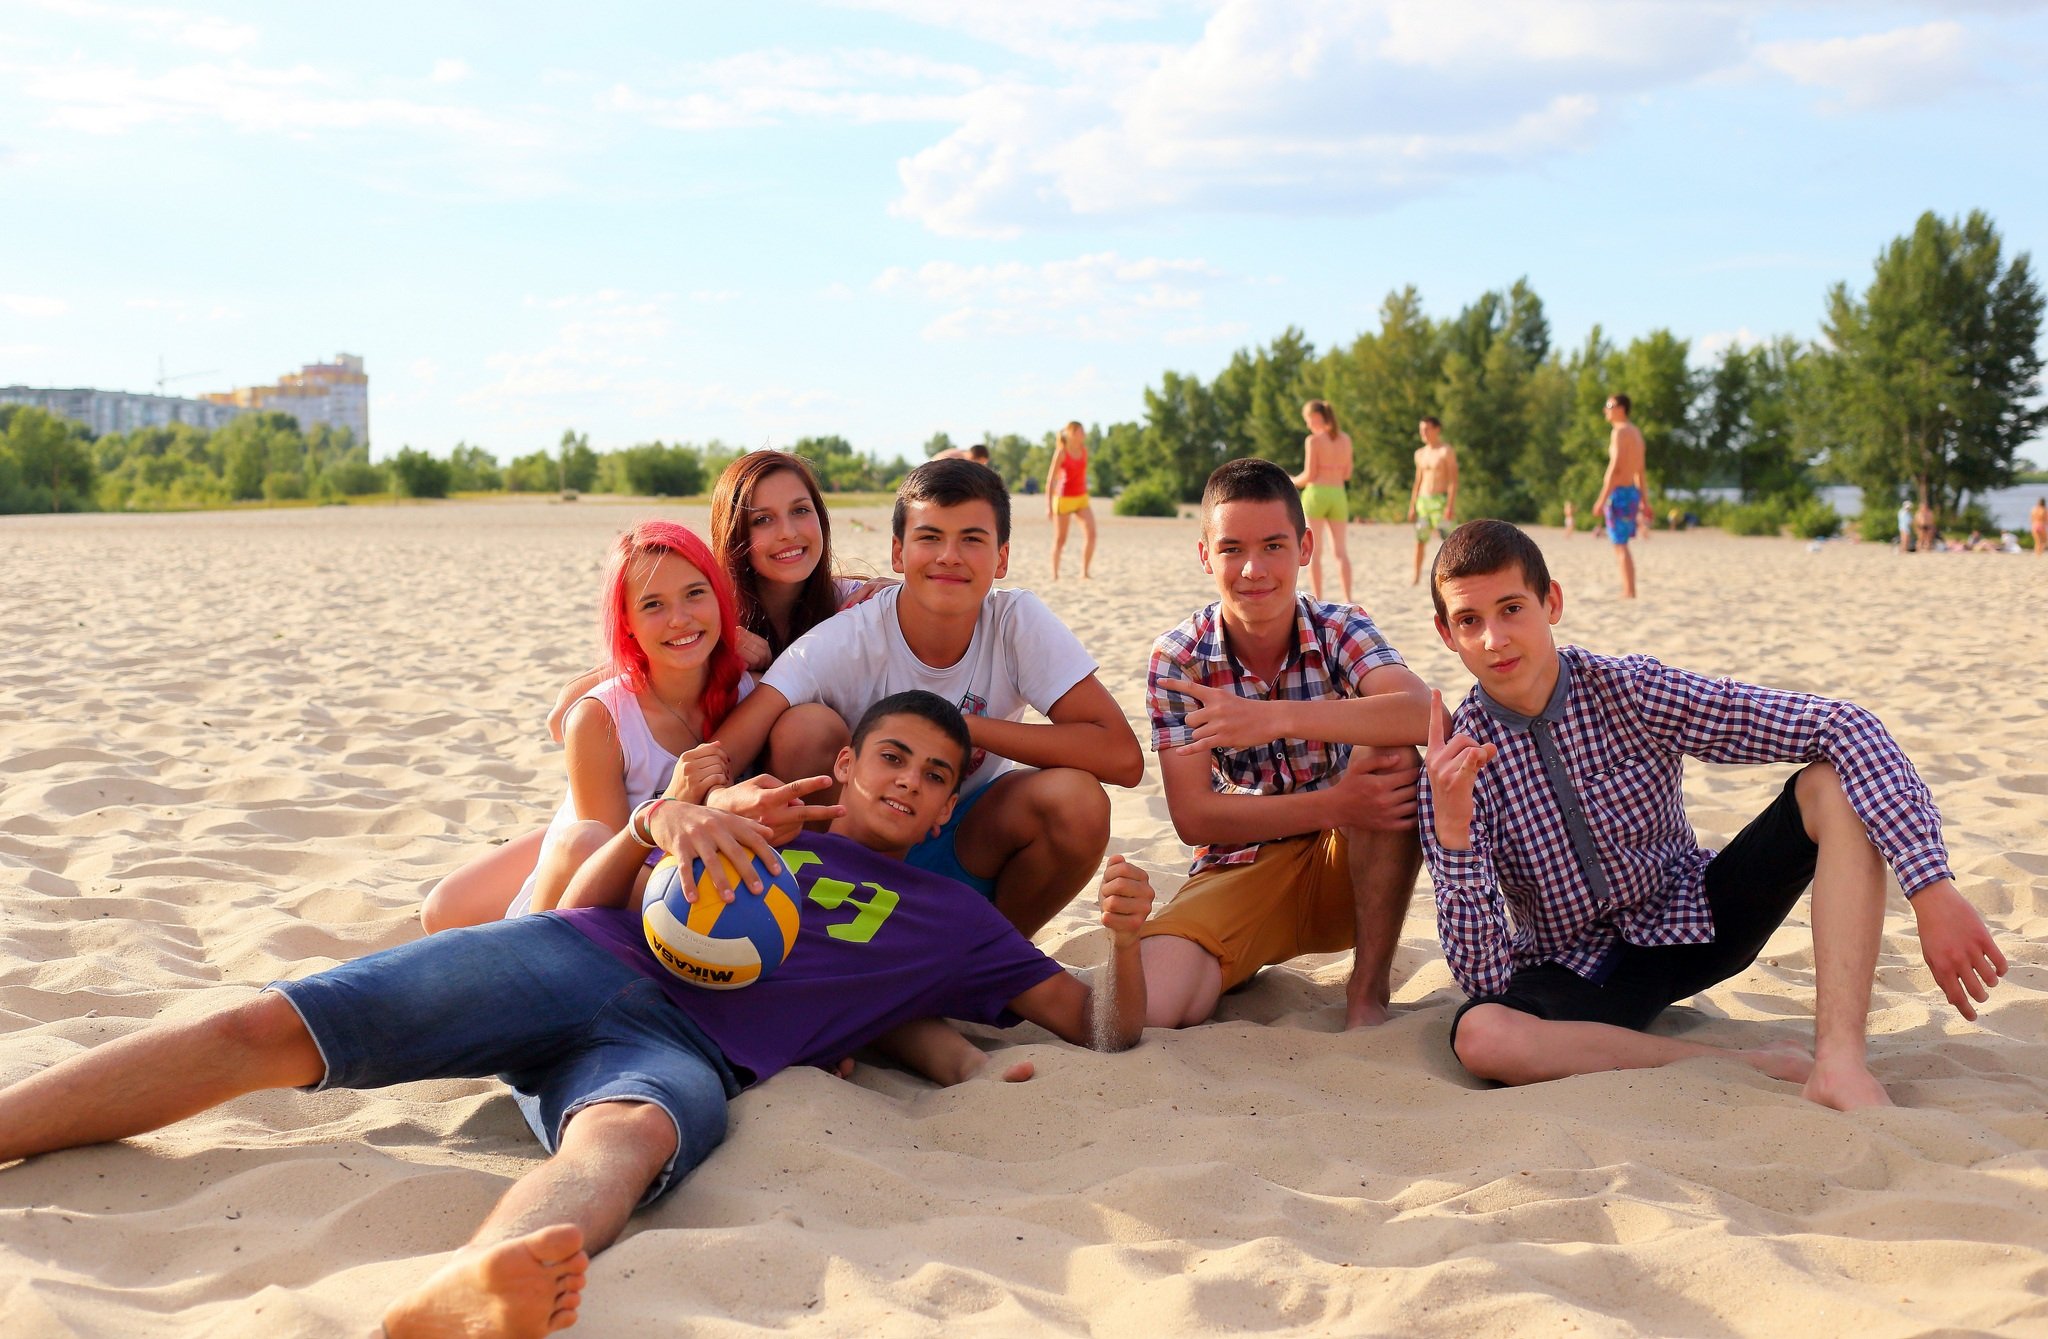 Teens on beach